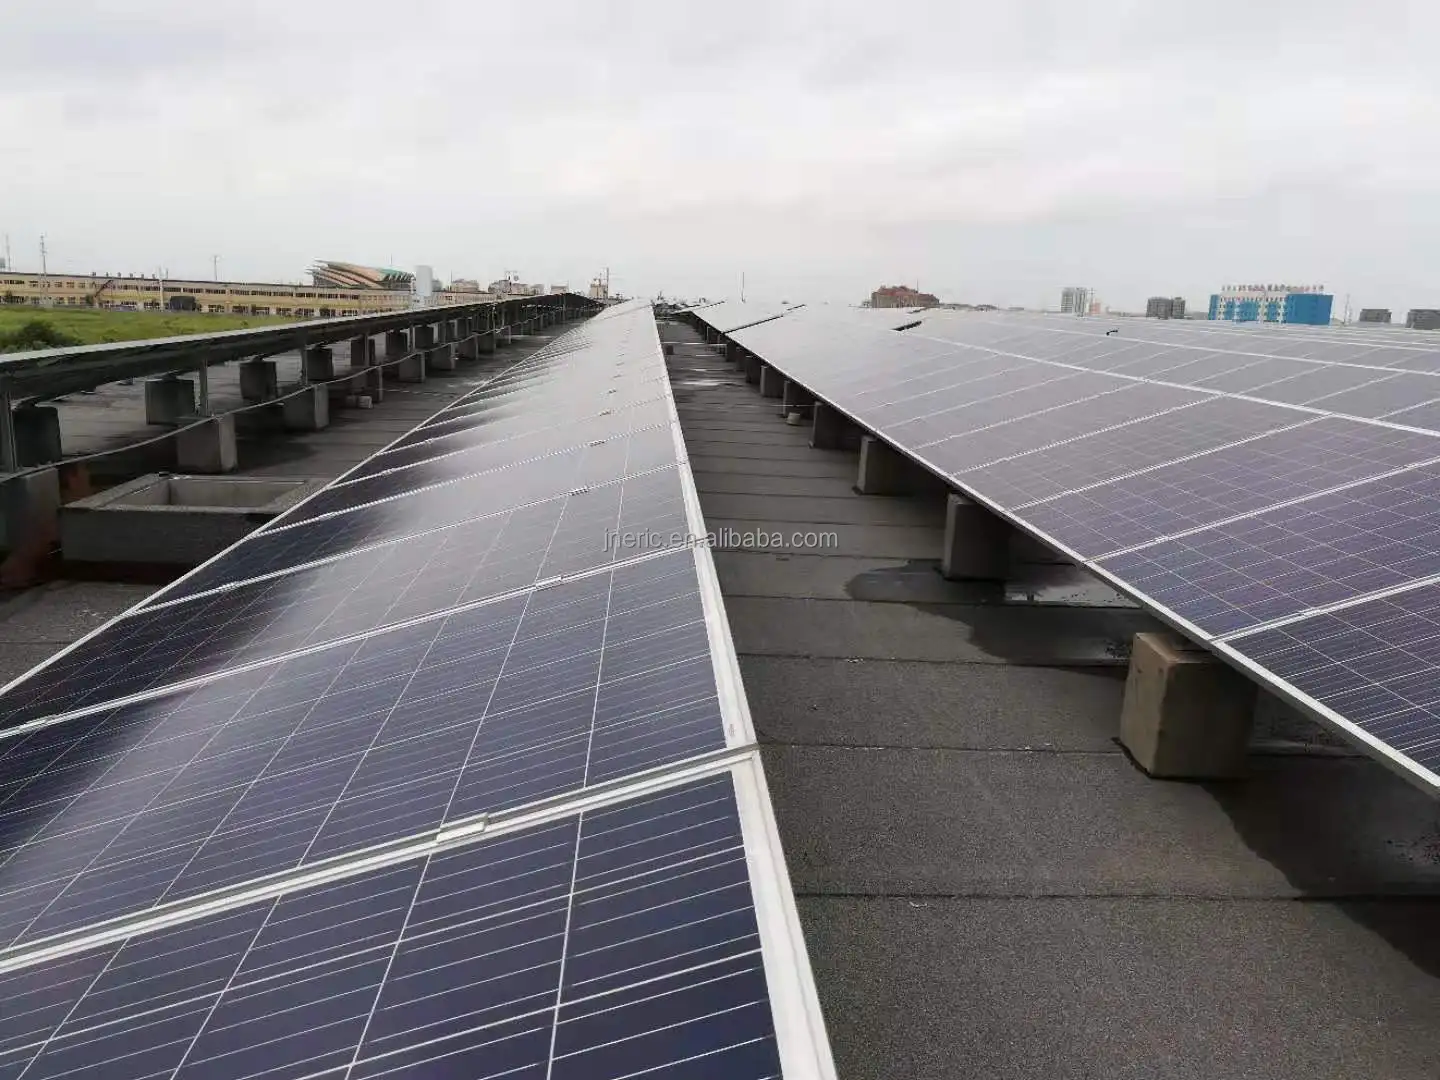 Commercial mono photovoltaic panneaux solaires 500w solar panel